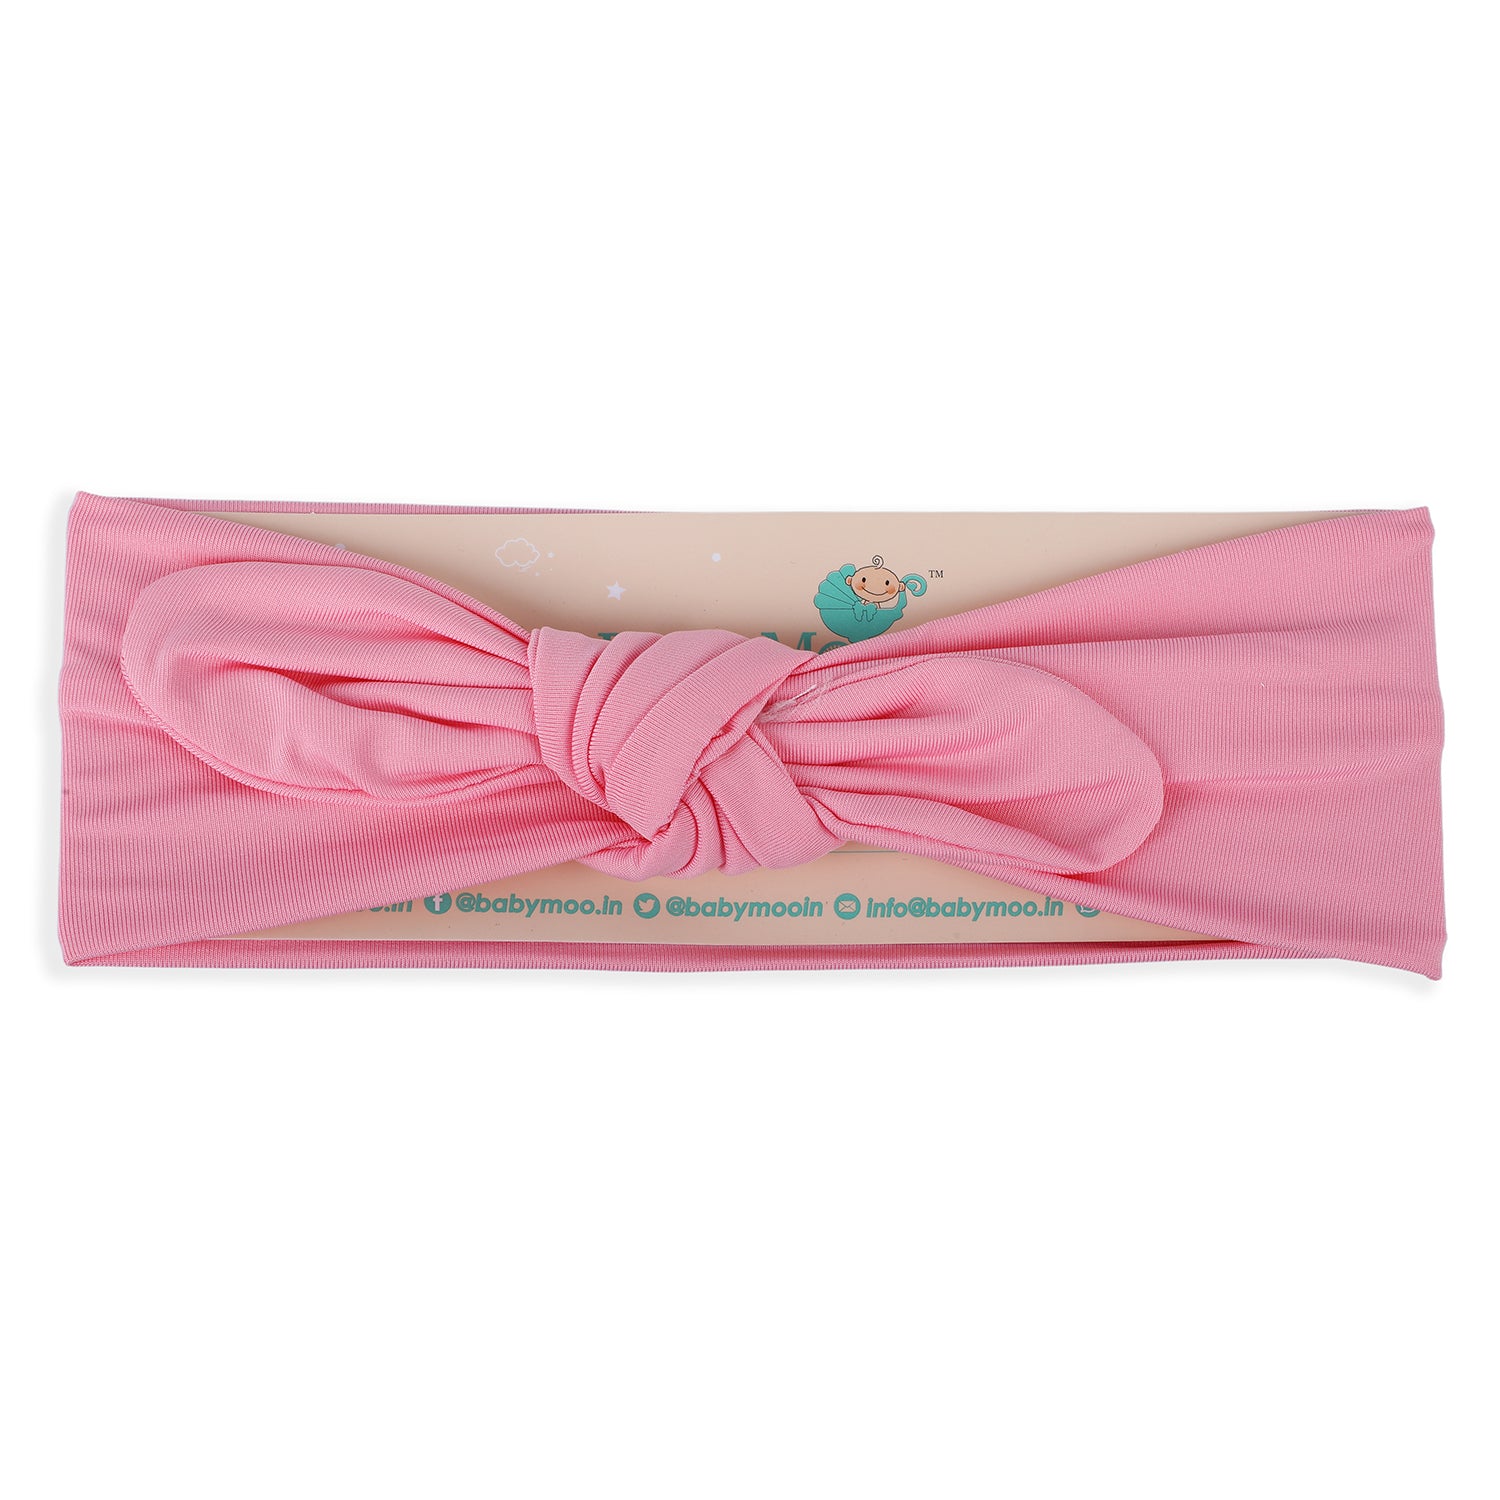 Bow Knot Headband - Light Pink - Baby Moo